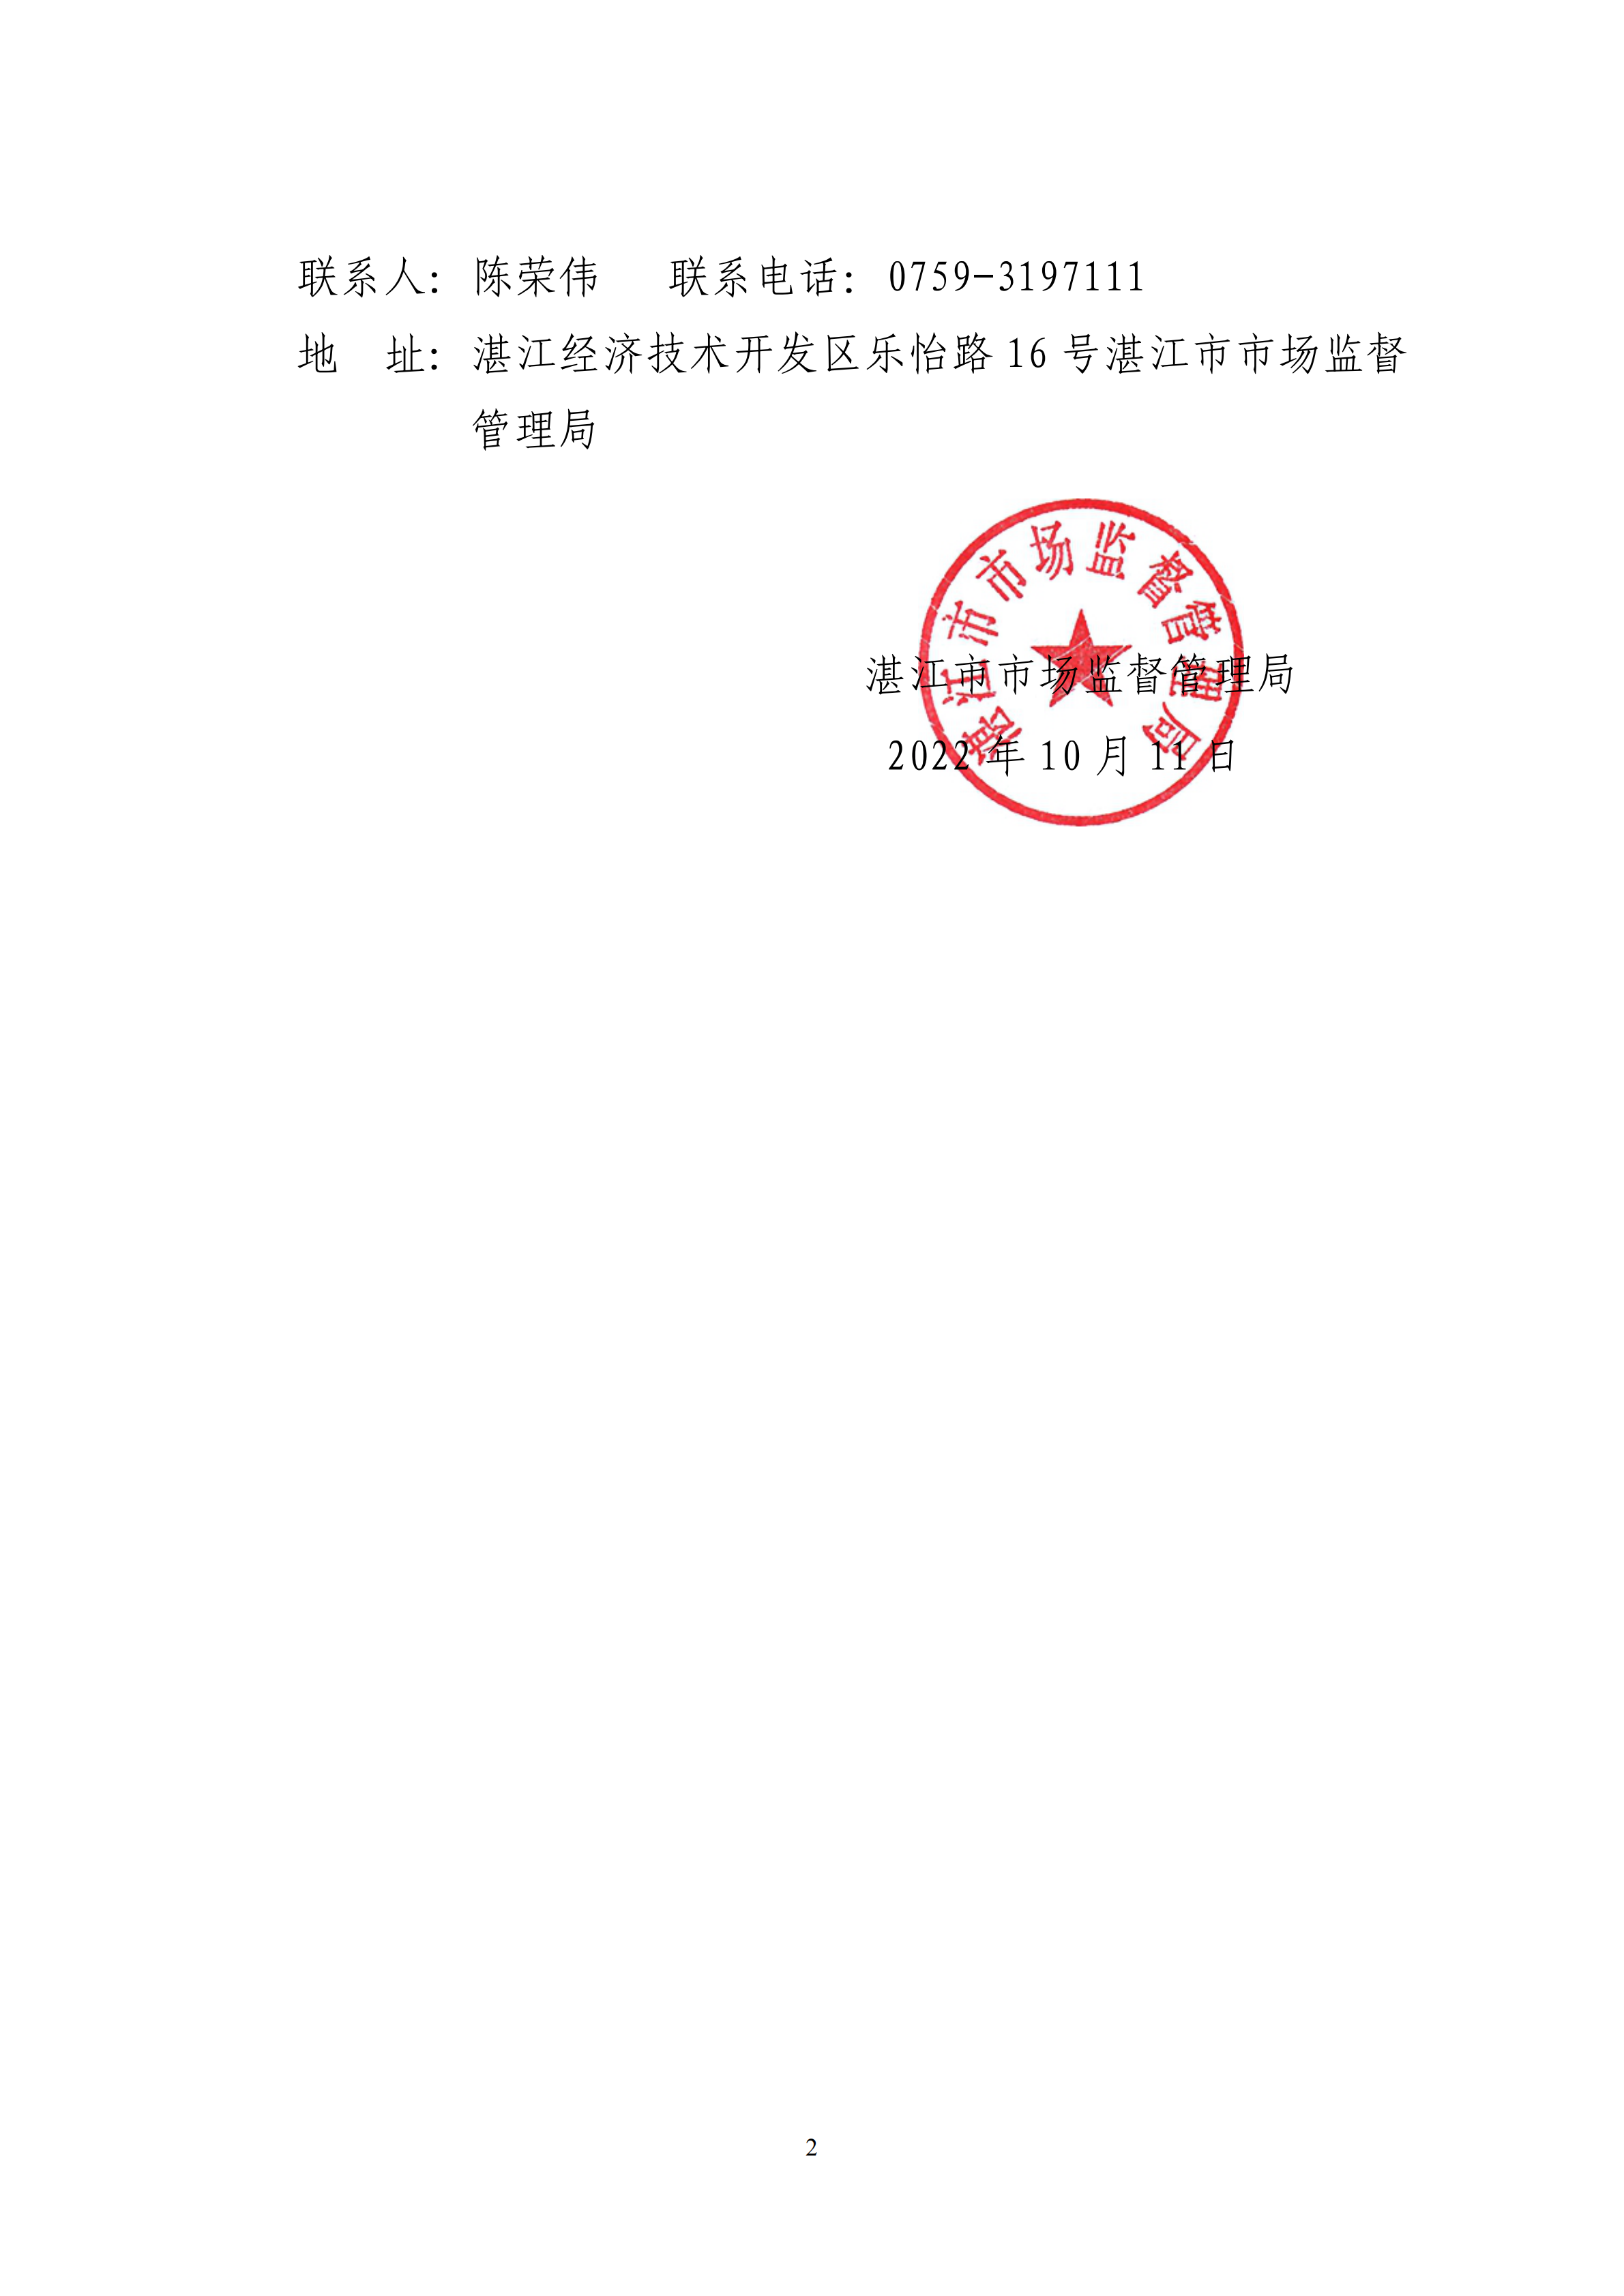 湛江市市场监督管理局撤销登记告知书(1)_01.png